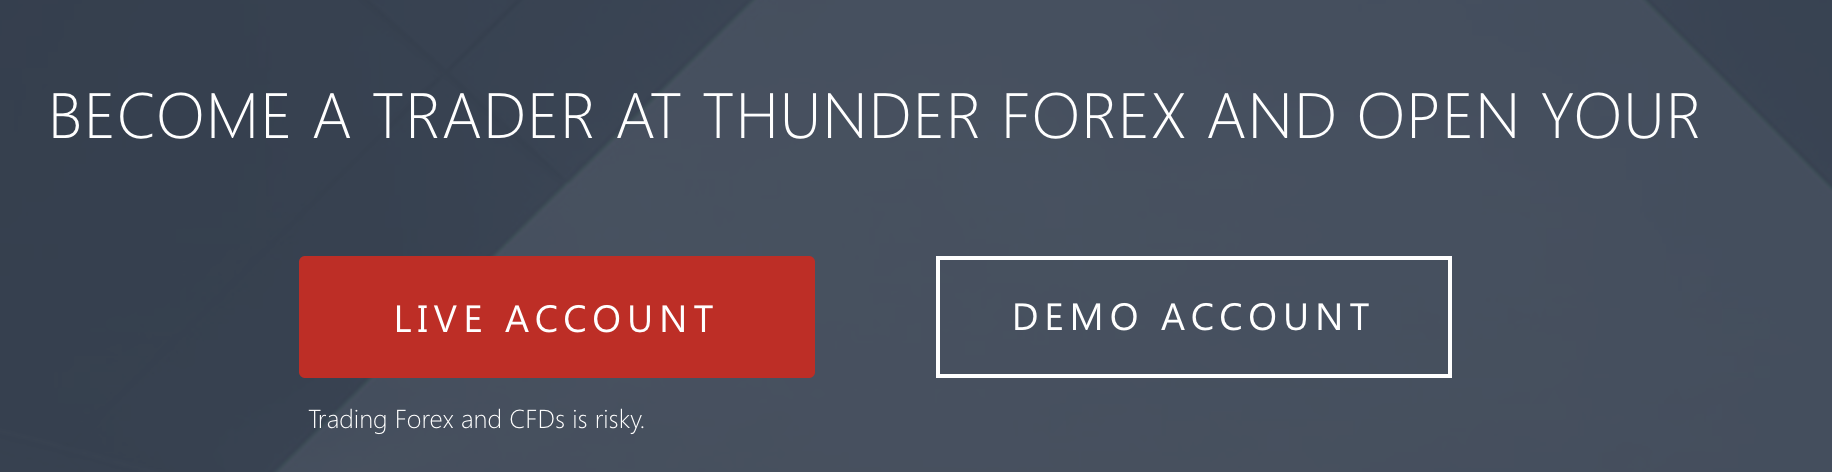 Możliwość praktykowania handlu z kontem demo z thunder forex